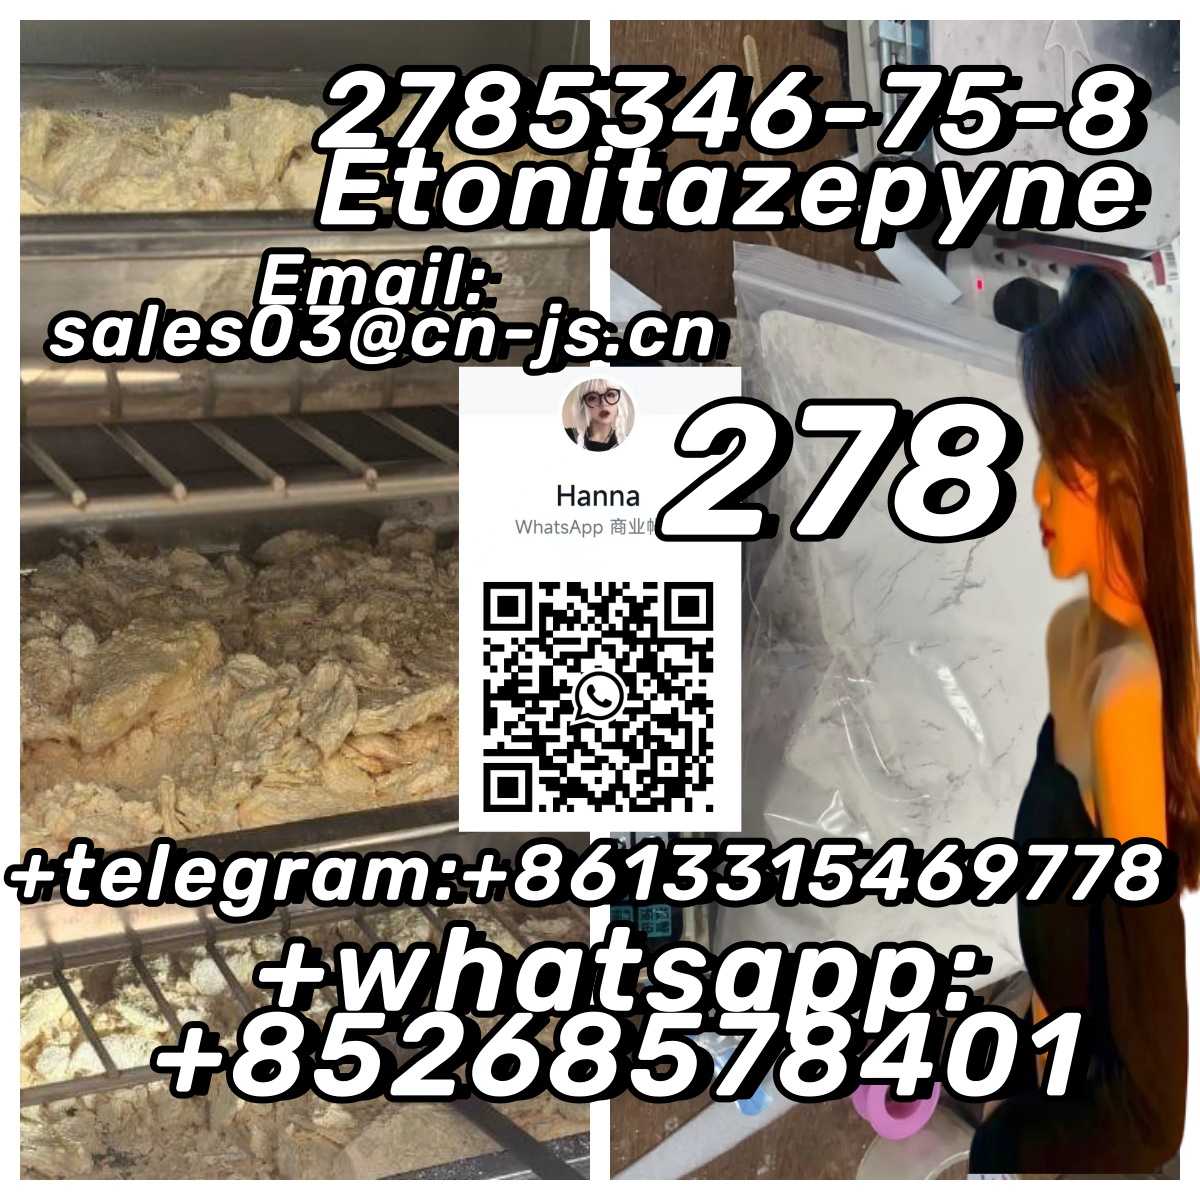 Free sample 2785346-75-8 Etonitazepyne,11,Cars,Cars